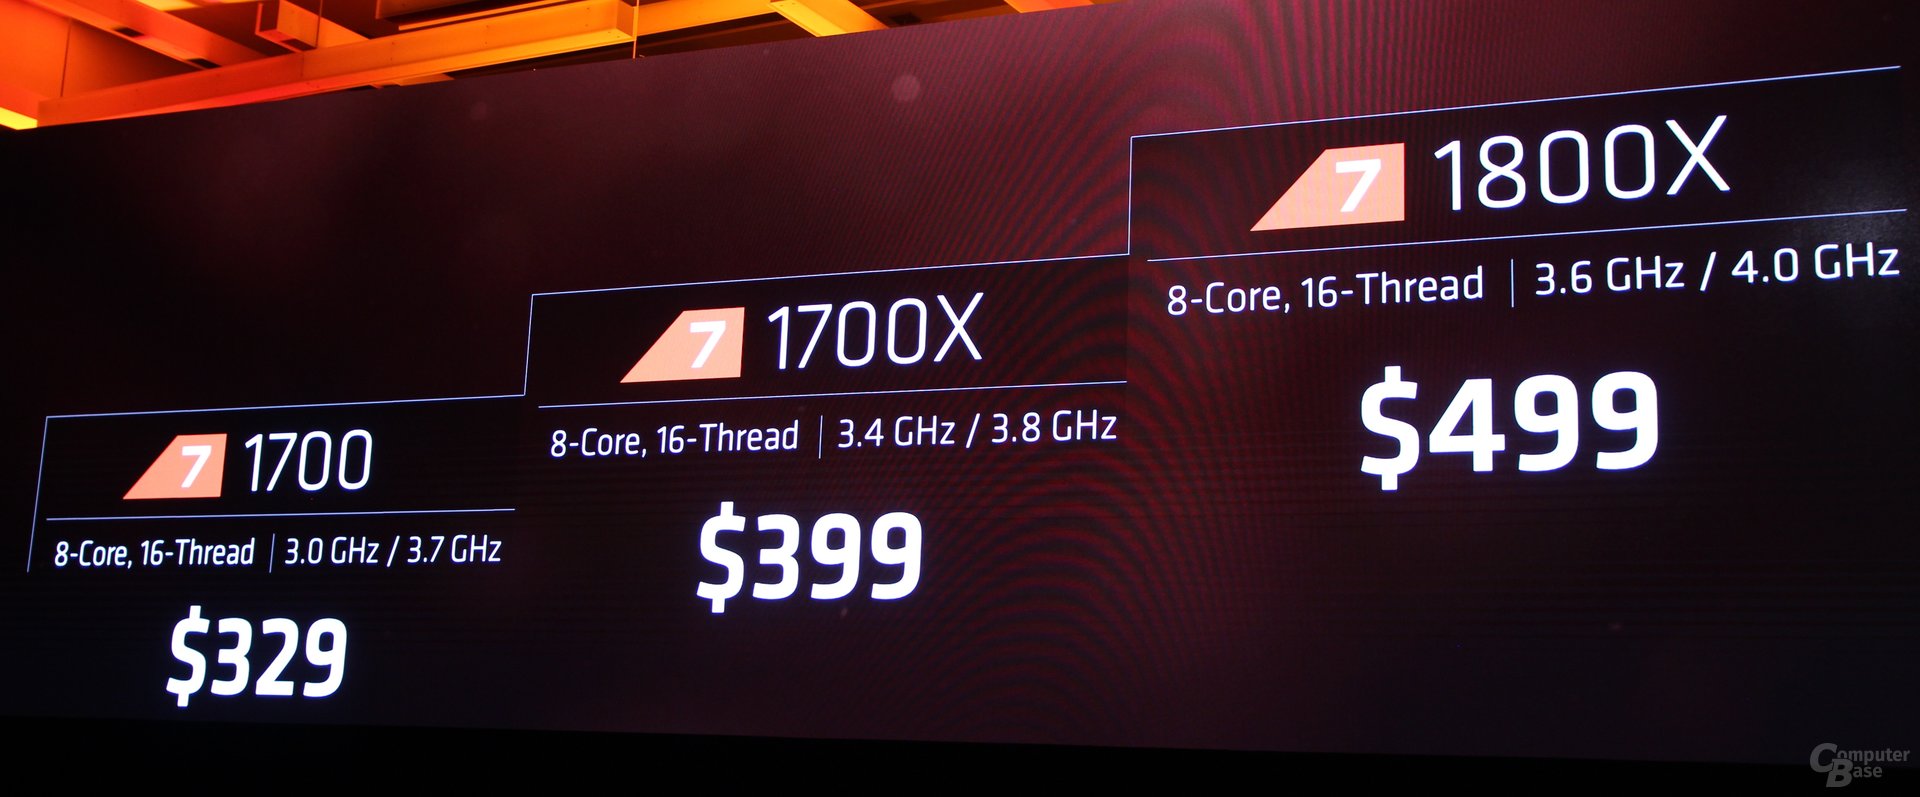 Die Preise für AMD Ryzen 7 1800X, 1700X und 1700